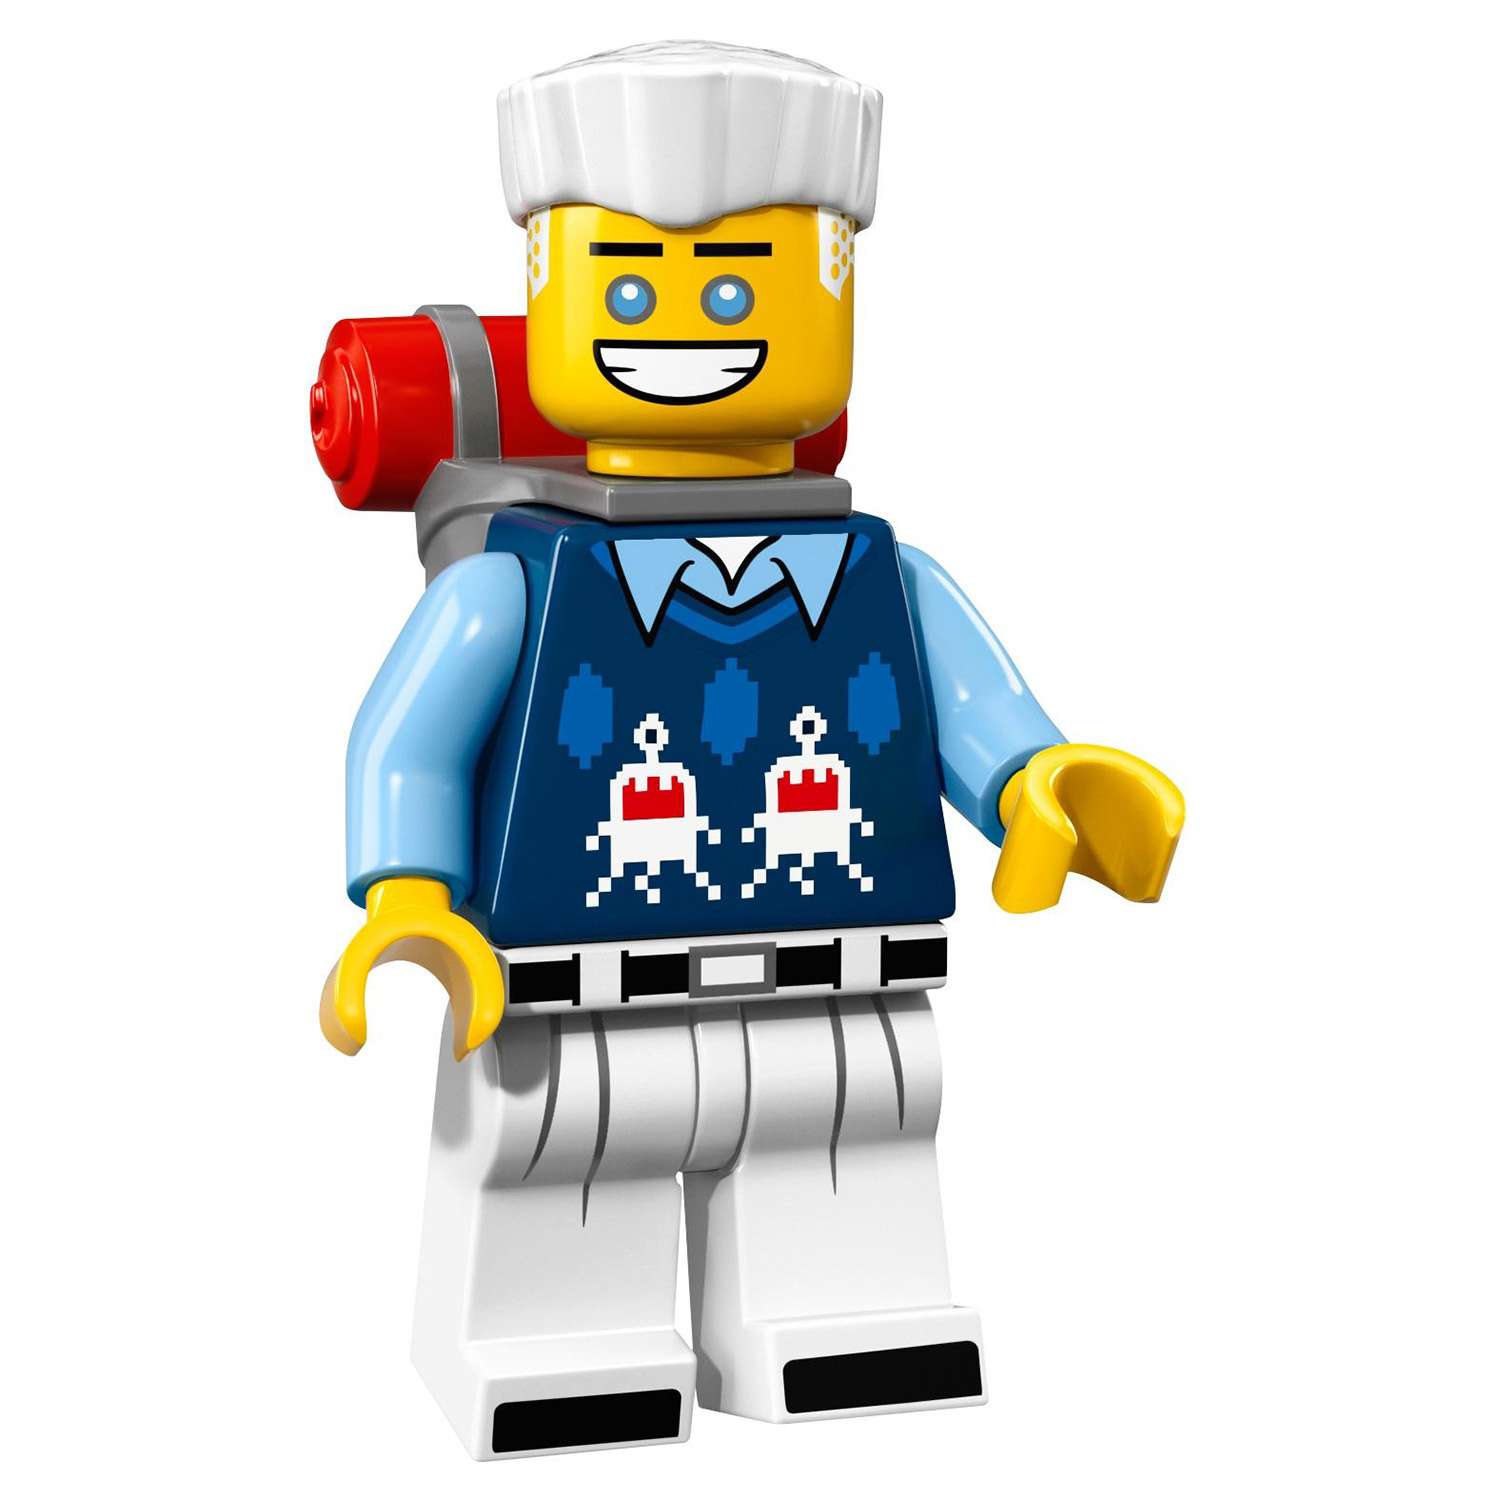 Конструктор LEGO Minifigures Минифигурки ФИЛЬМ: НИНДЗЯГО (71019) в ассортименте - фото 52